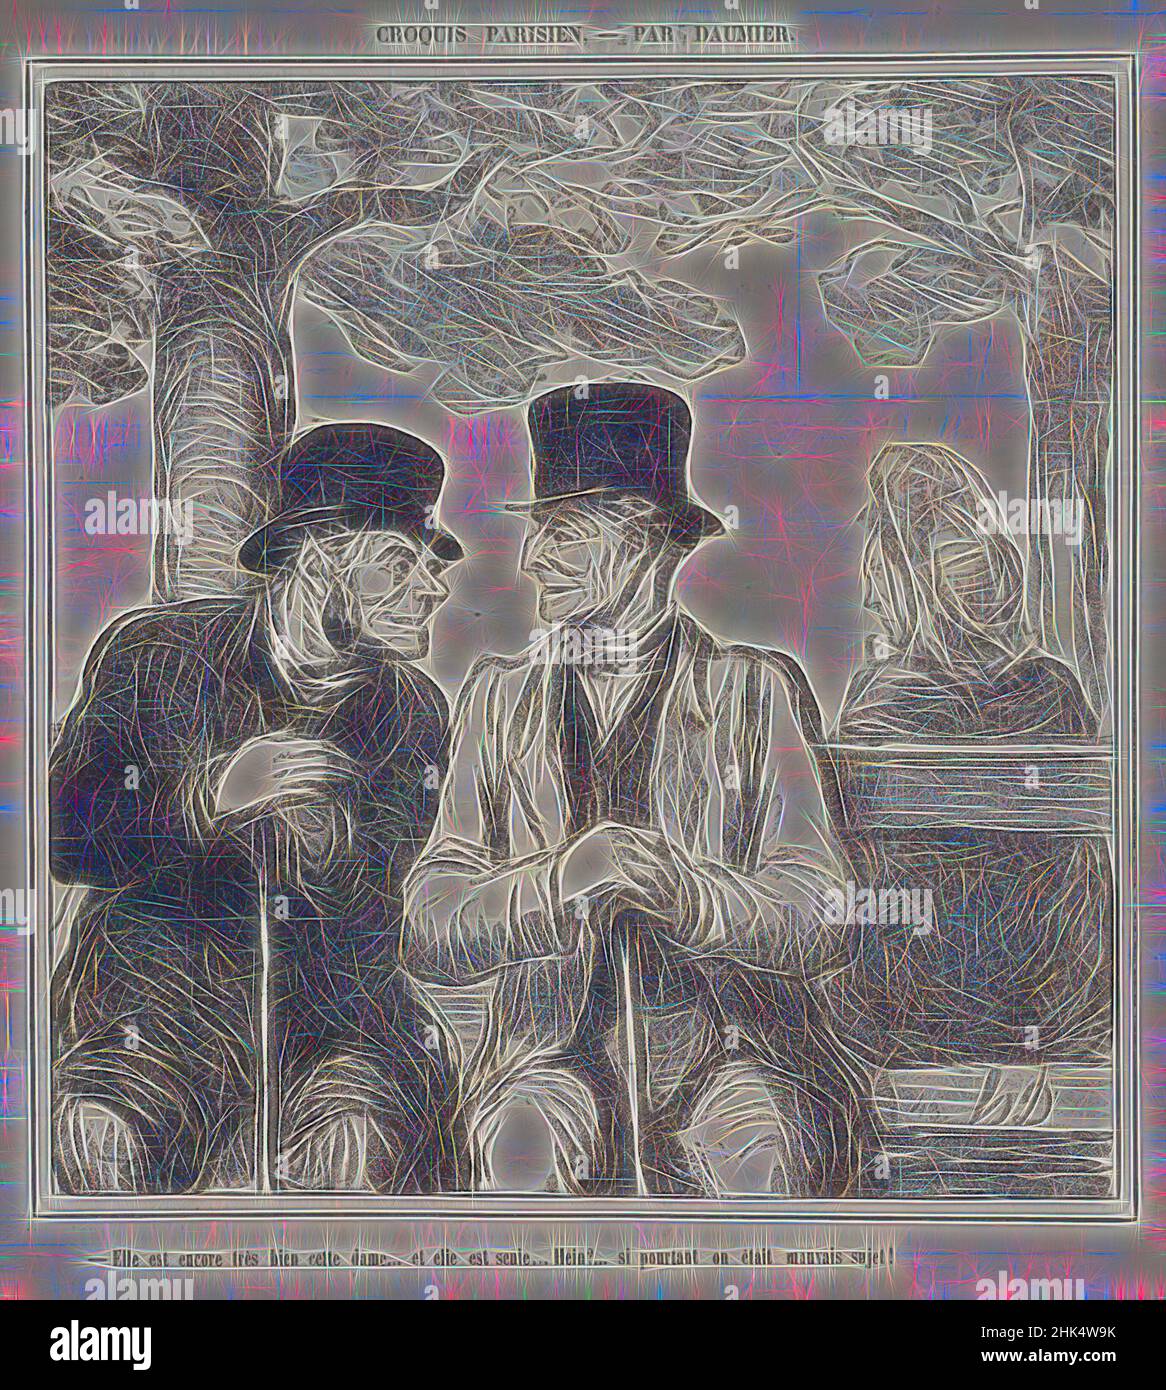 Inspirado por Elle Est Encore très Bien, Cette Dame..., Honoré Daumier, Francés, 1808-1879, Litografía sobre papel prensa, 8 de septiembre de 1864, Hoja: 12 5/8 x 11 3/8 pulg., 32,1 x 28,9 cm, banco, sombrero, hombre, mujer, Reimaginado por Artotop. Arte clásico reinventado con un toque moderno. Diseño de brillo cálido y alegre y luminosidad e radiación de rayos de luz. Fotografía inspirada en el surrealismo y el futurismo, que abarca la energía dinámica de la tecnología moderna, el movimiento, la velocidad y la revolución de la cultura Foto de stock